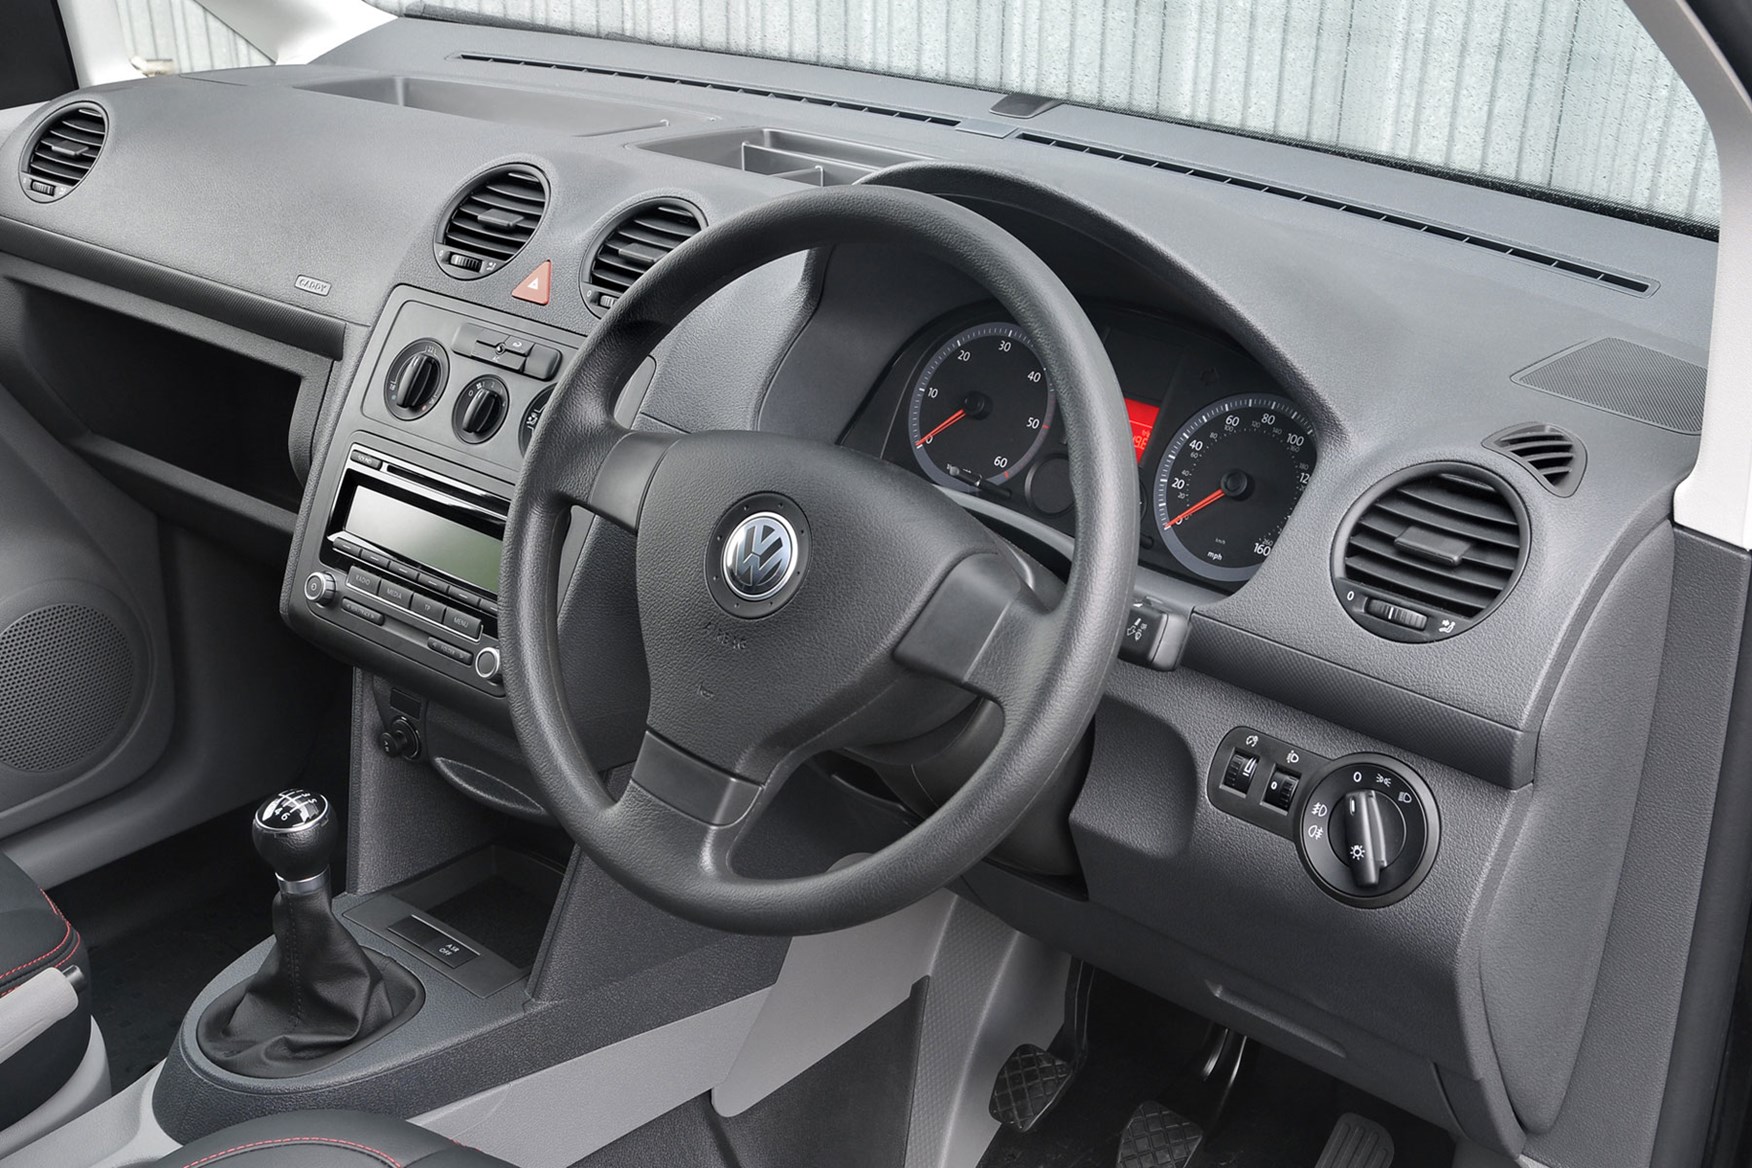 VW Caddy (2004-2010) cab interior